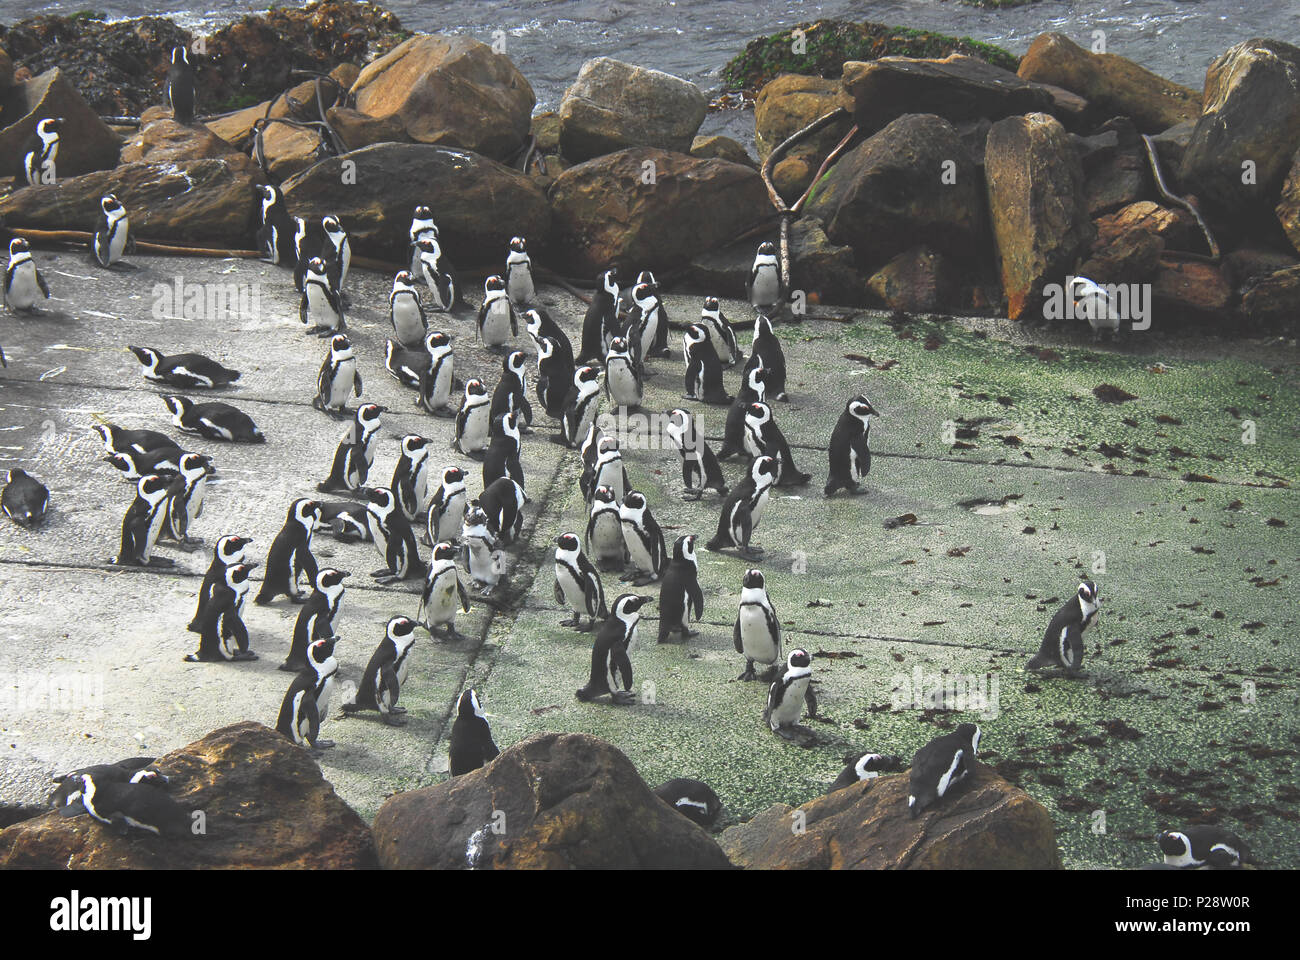 Ces pingouins d'Afrique du Sud (Spheniscus demersus) ont pris en charge une rampe à Betty's Bay qui offre un accès facile à la mer. Banque D'Images